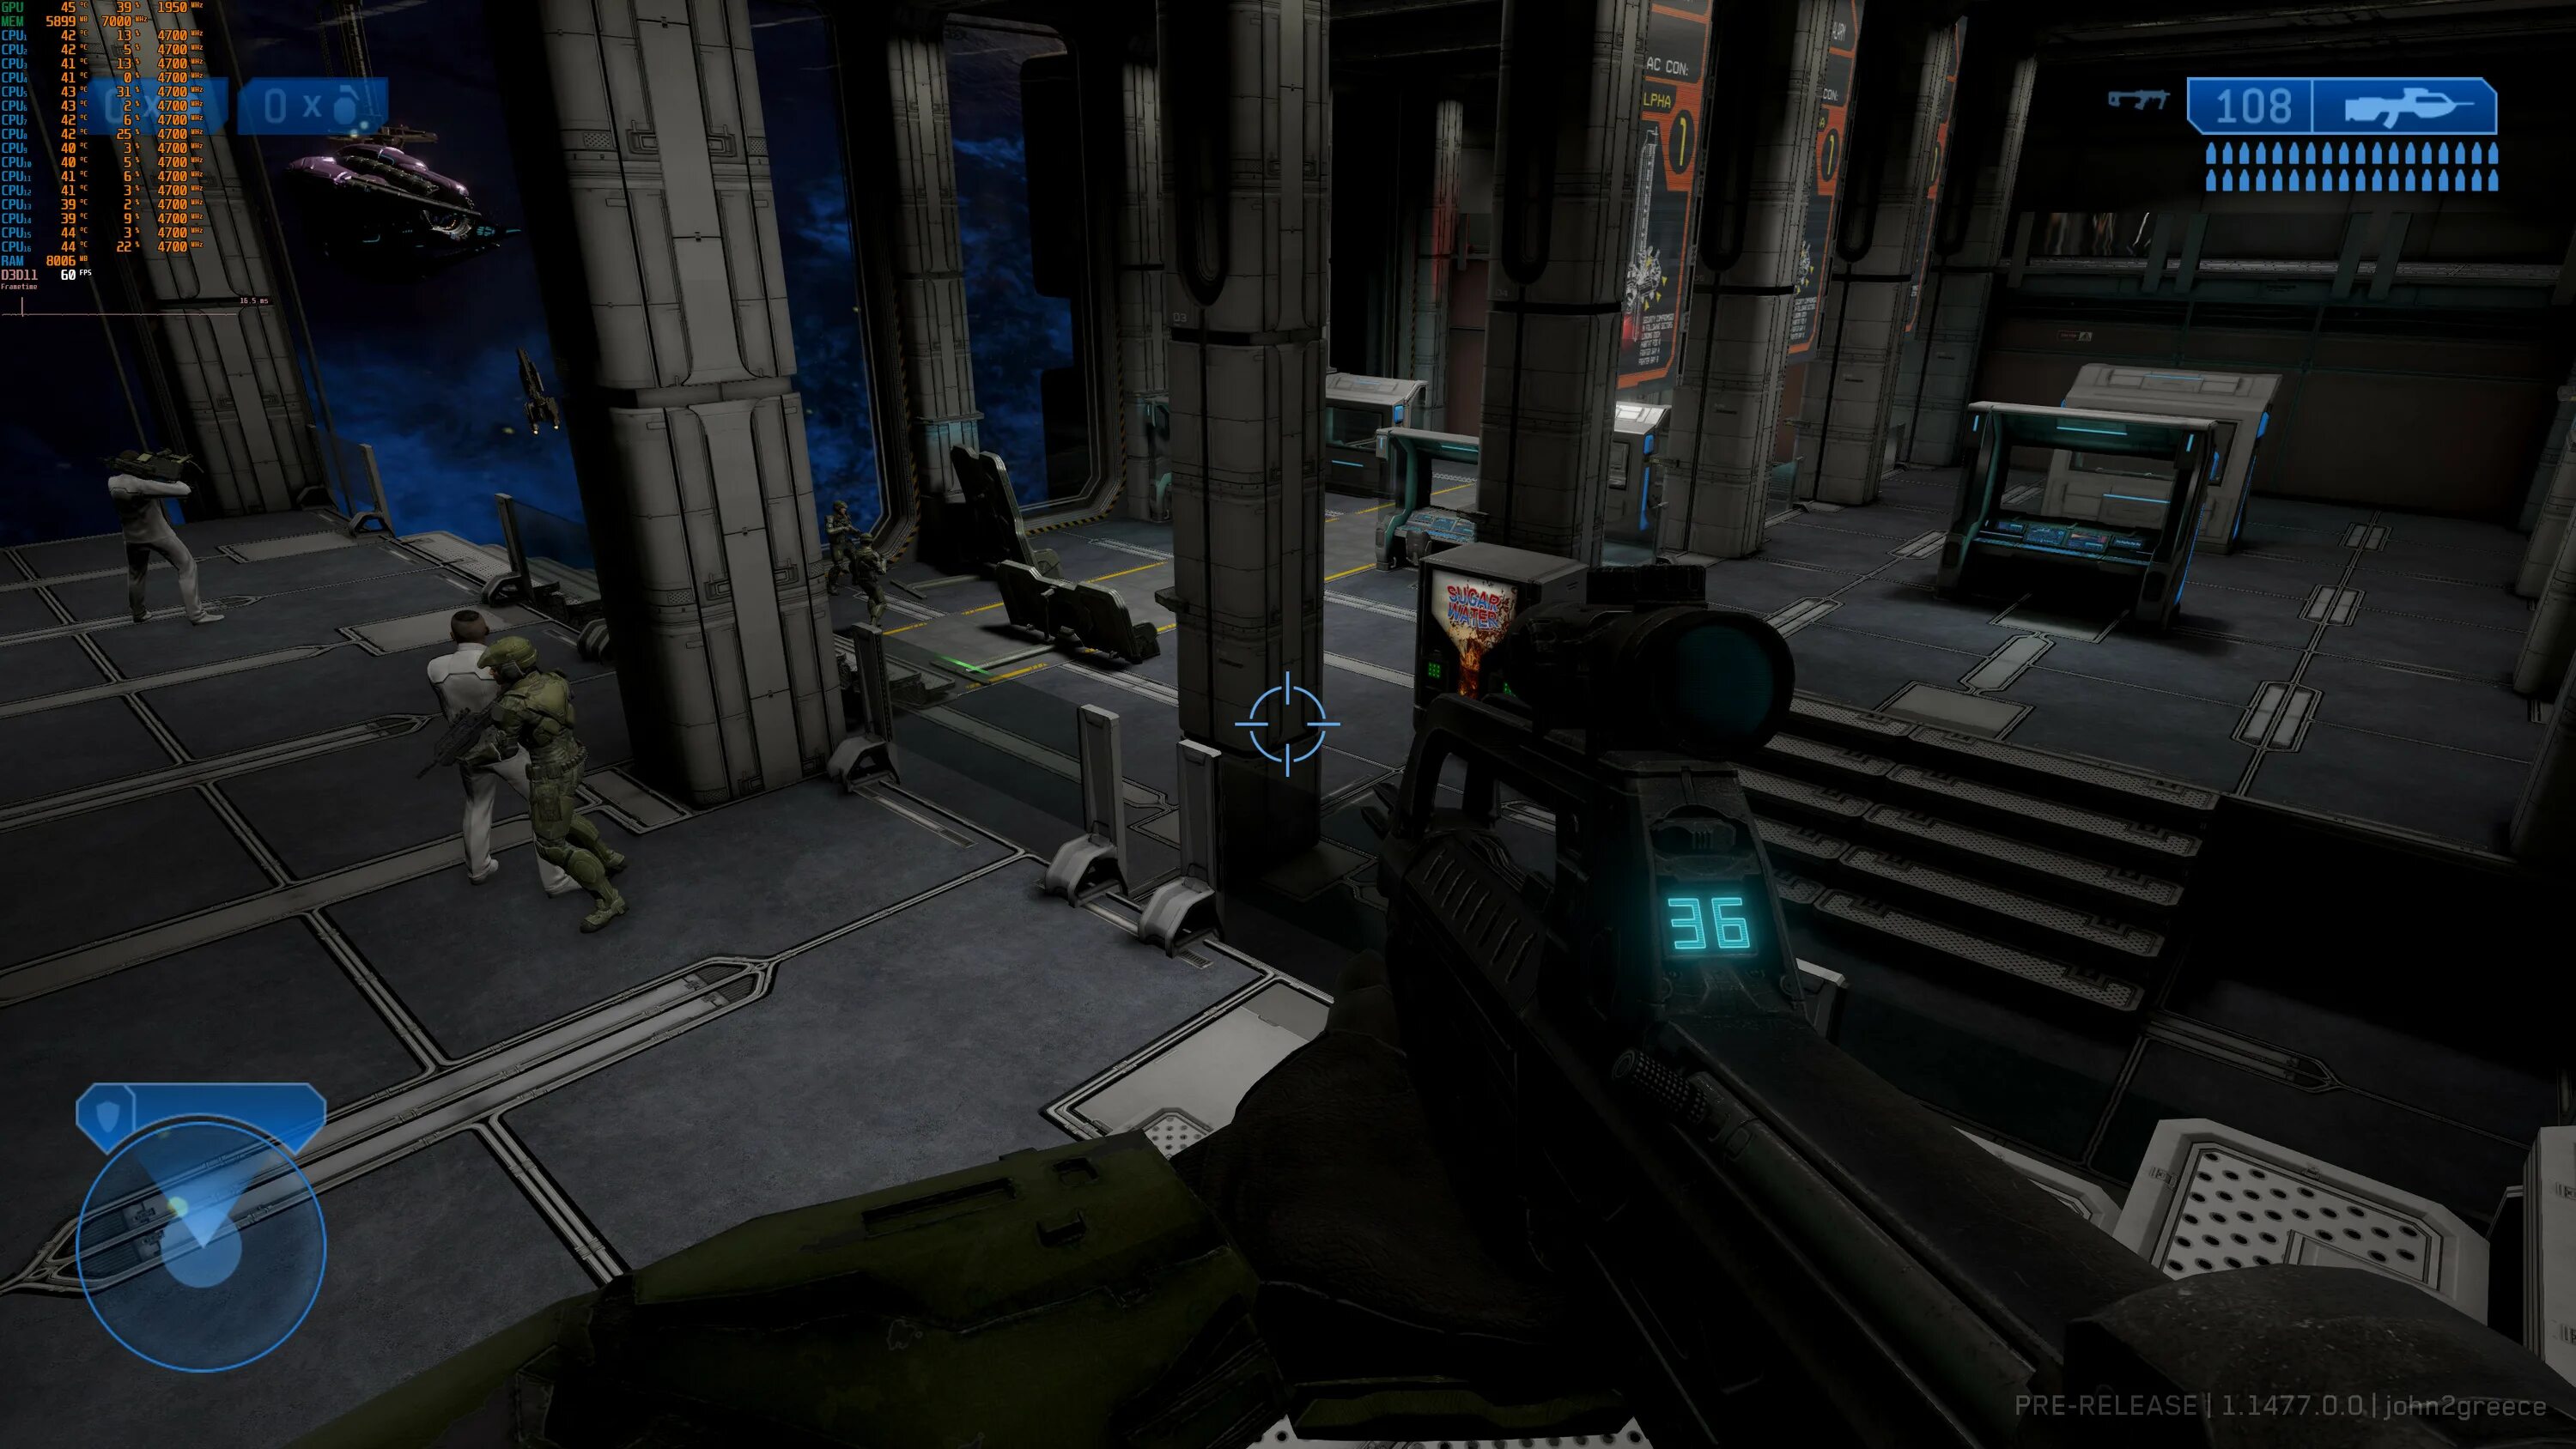 Игры стали синими. Halo 2 ремастер. Хало 2 ремастер Скриншоты. Halo 2 Anniversary Скриншоты. Halo 2 ремастер Чиф.